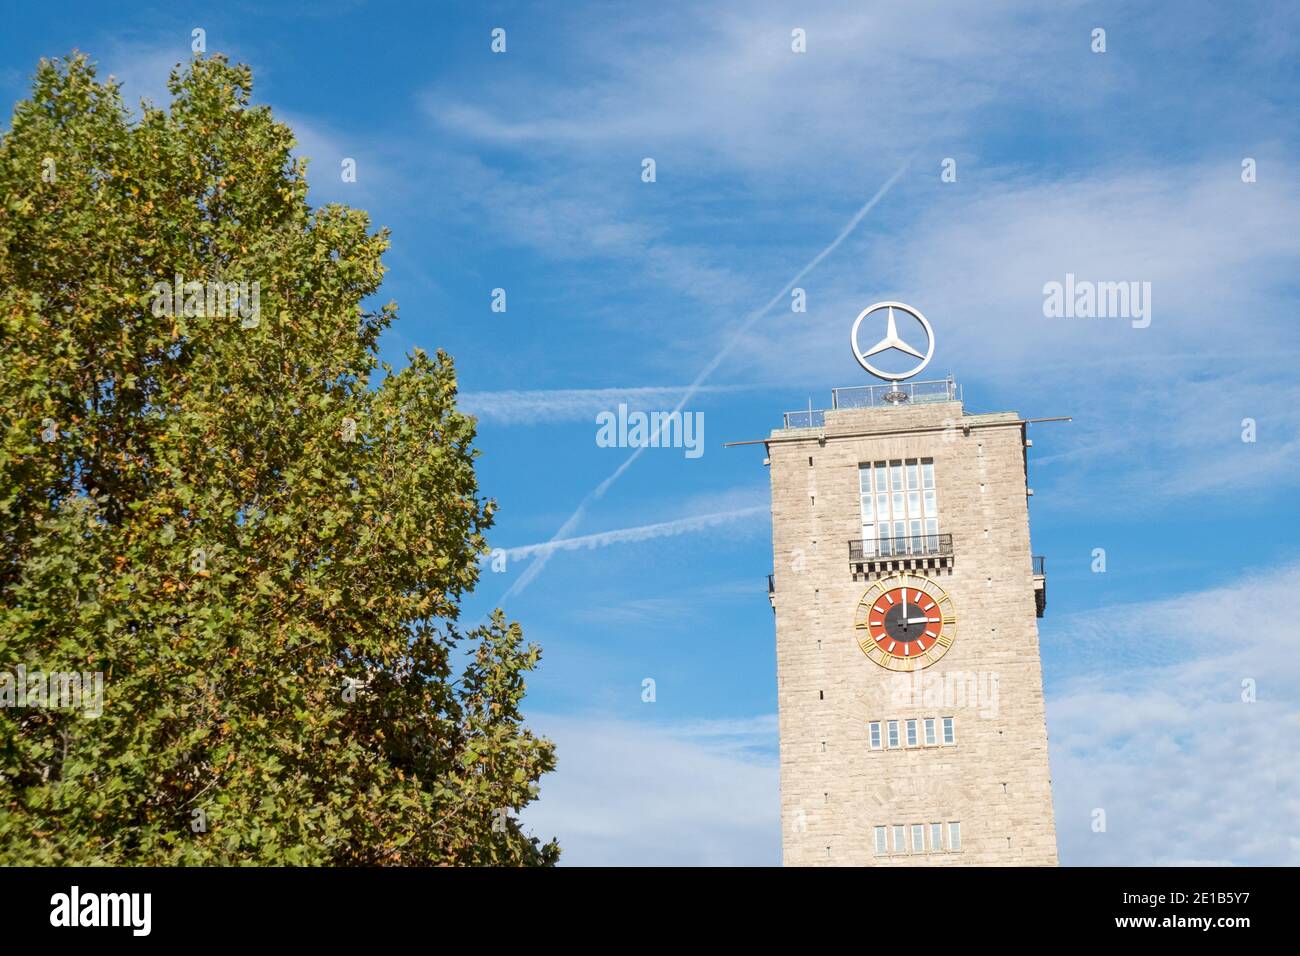 STUTTGART,GERMANY - NOVEMBER 17, 2020:Mercedes (Daimler) Tower next to train station in Stuttgart city center Stock Photo